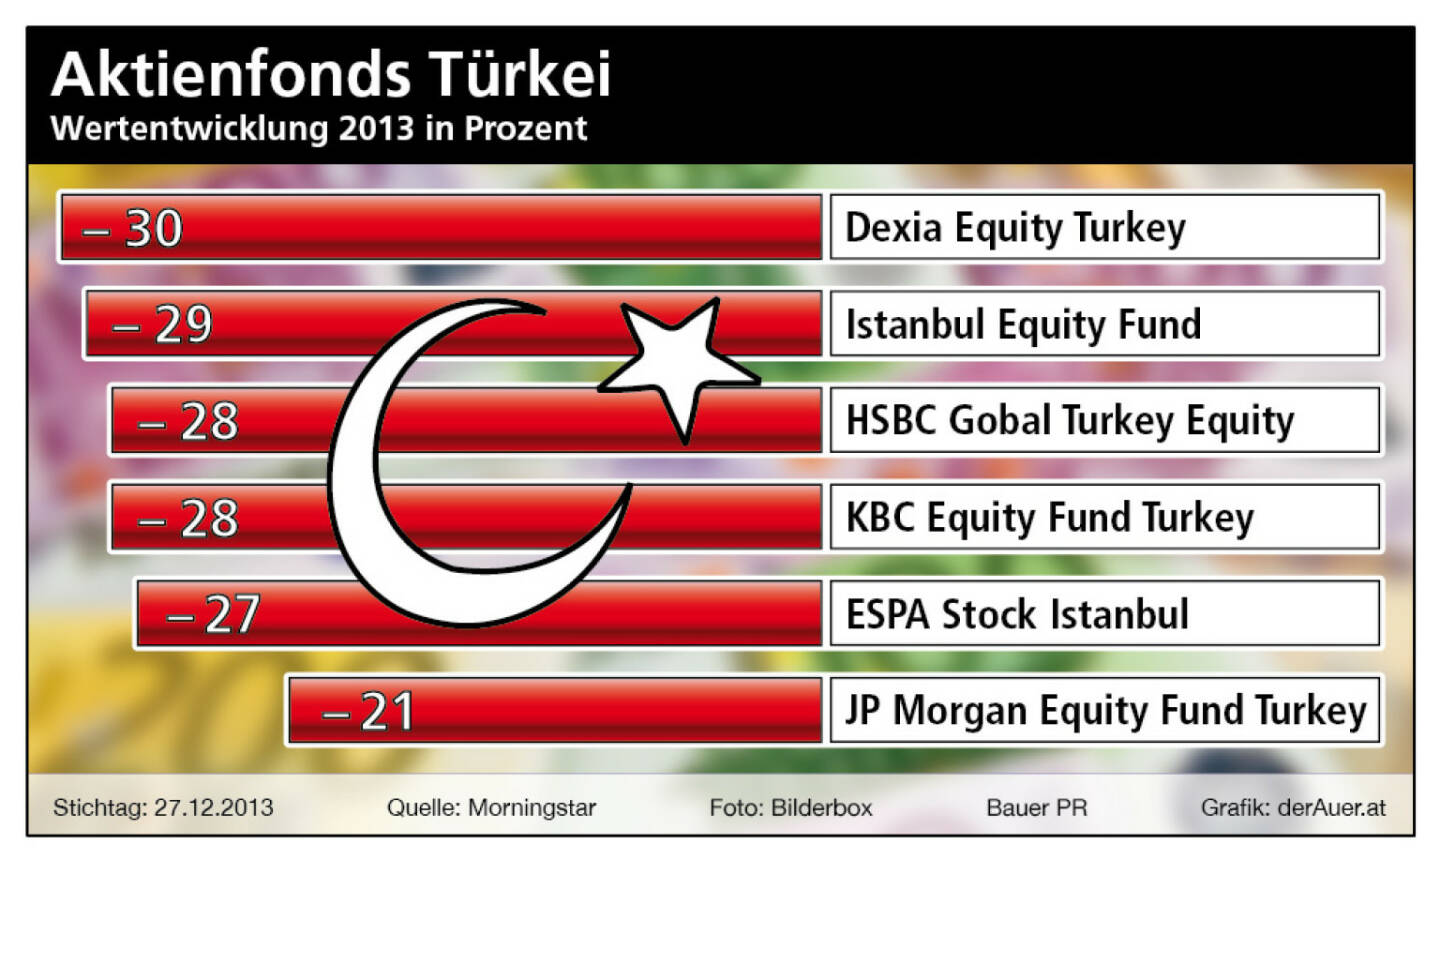 Aktienfonds Türkei 2013: Dexia Equity Turkey, Istanbul Equity Fund, HSBC Global Turkey Equity, KBC Equity Fund Turkey, ESPA Stock Istanbul, JP Morgan Equity Fund Turkey (c) Bauer PR, derAuer.at